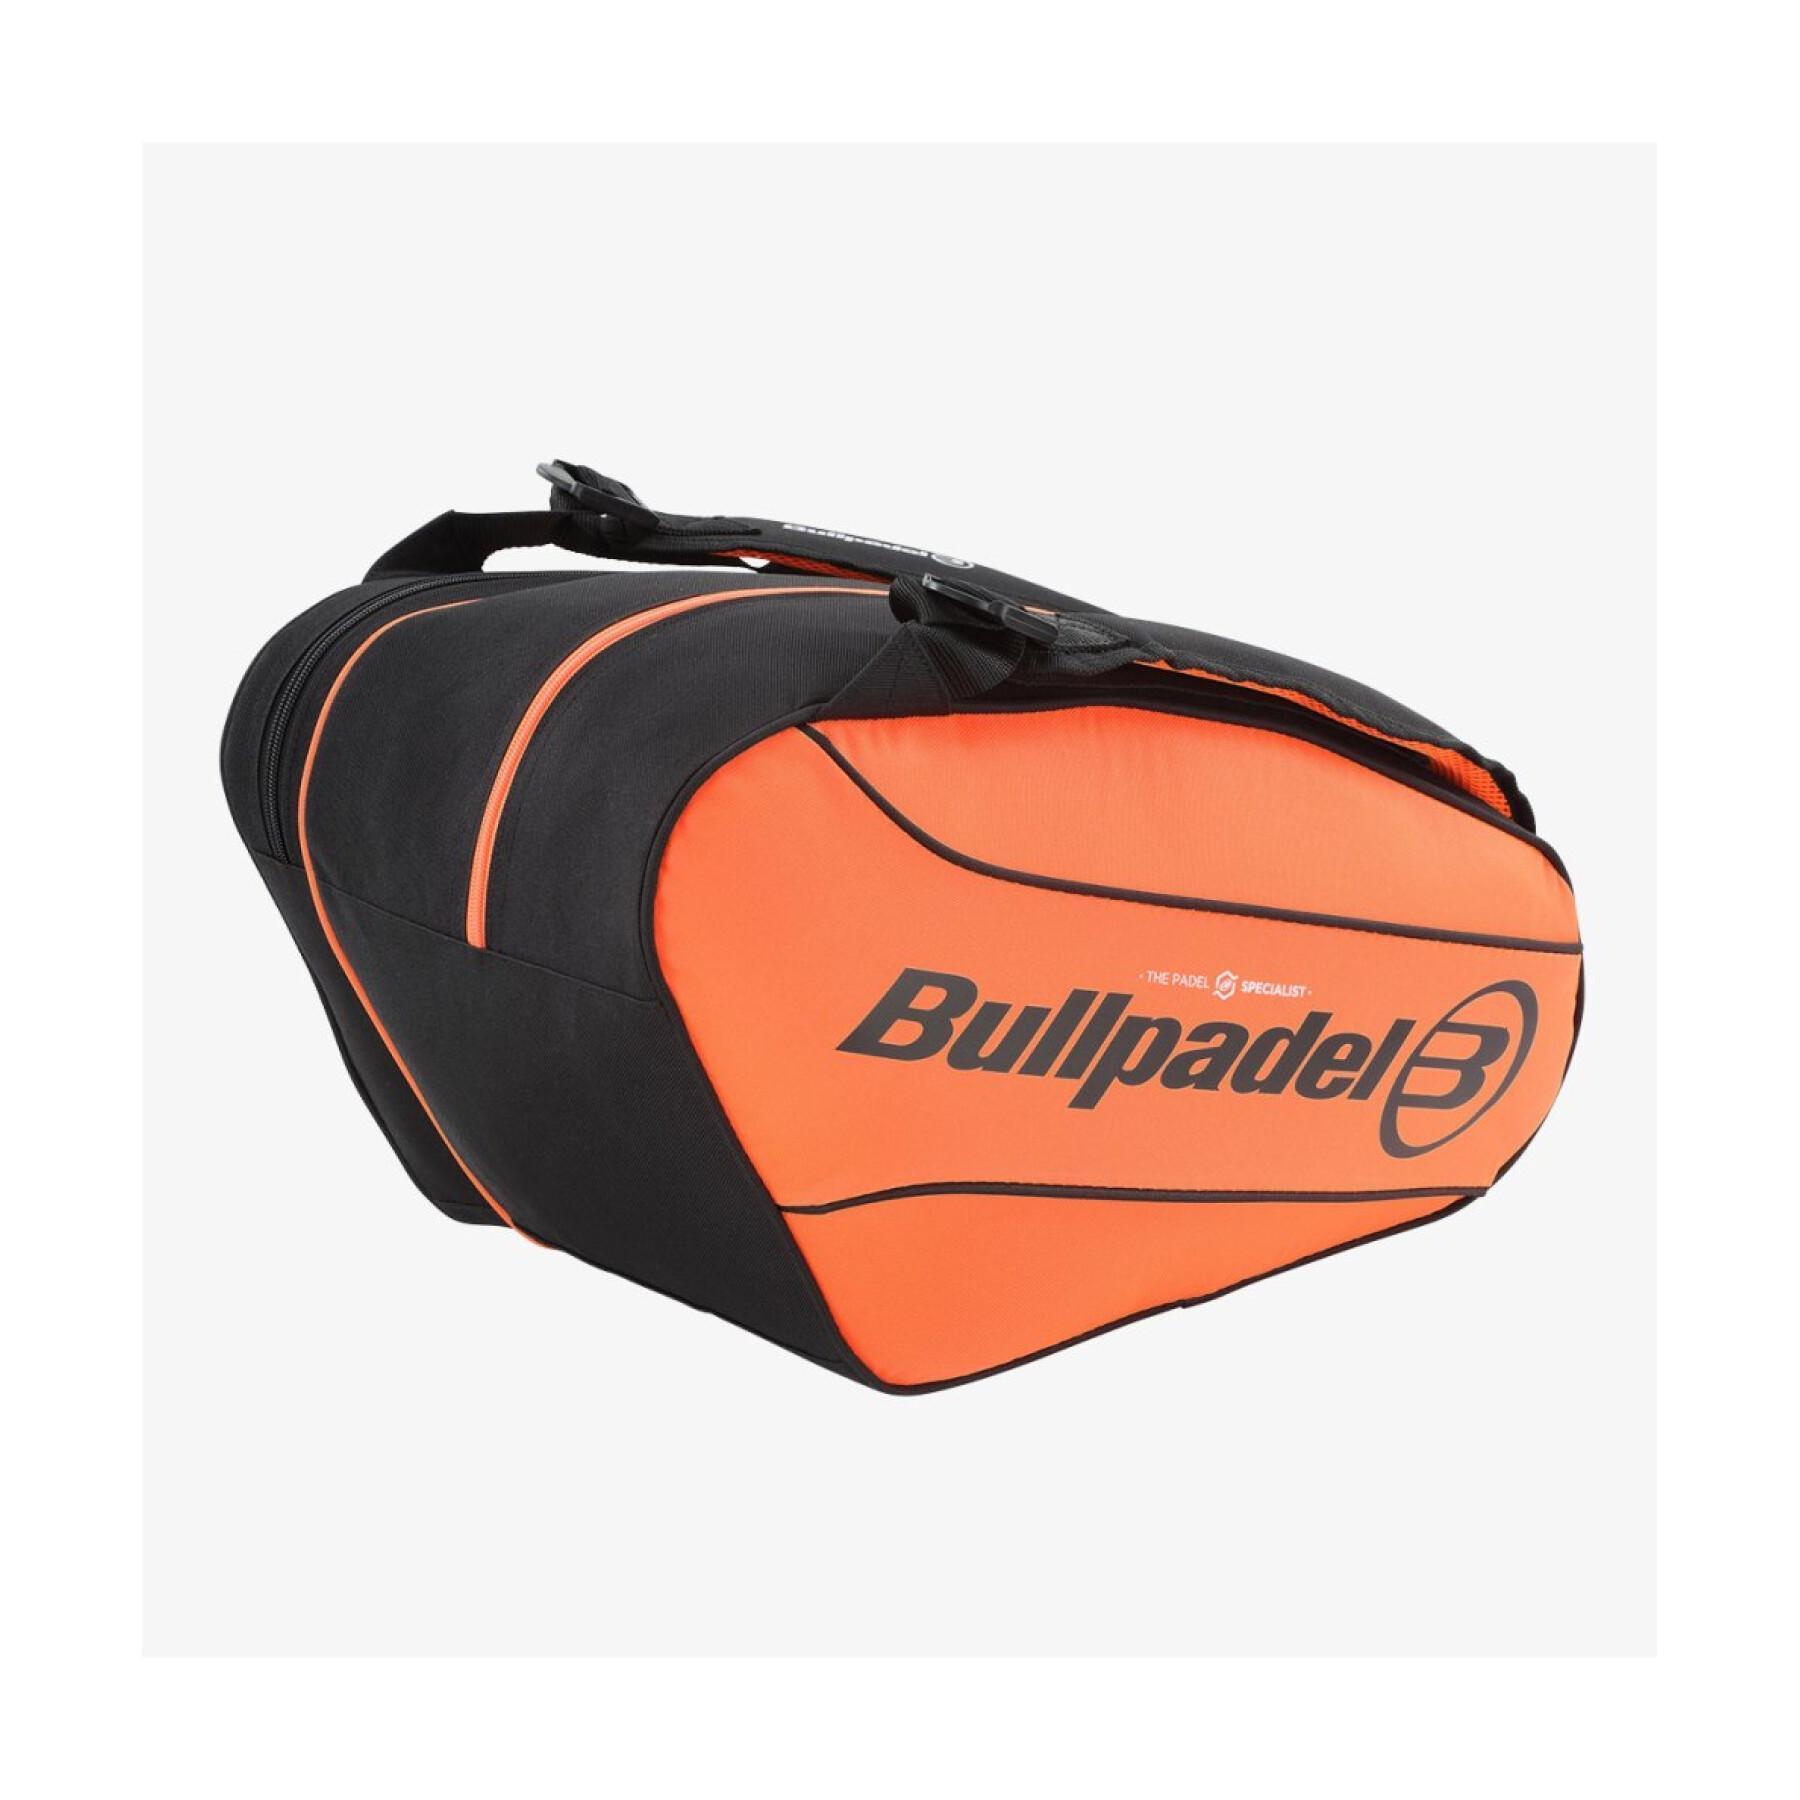 Paddle bag Bullpadel Bpp23014 Performance